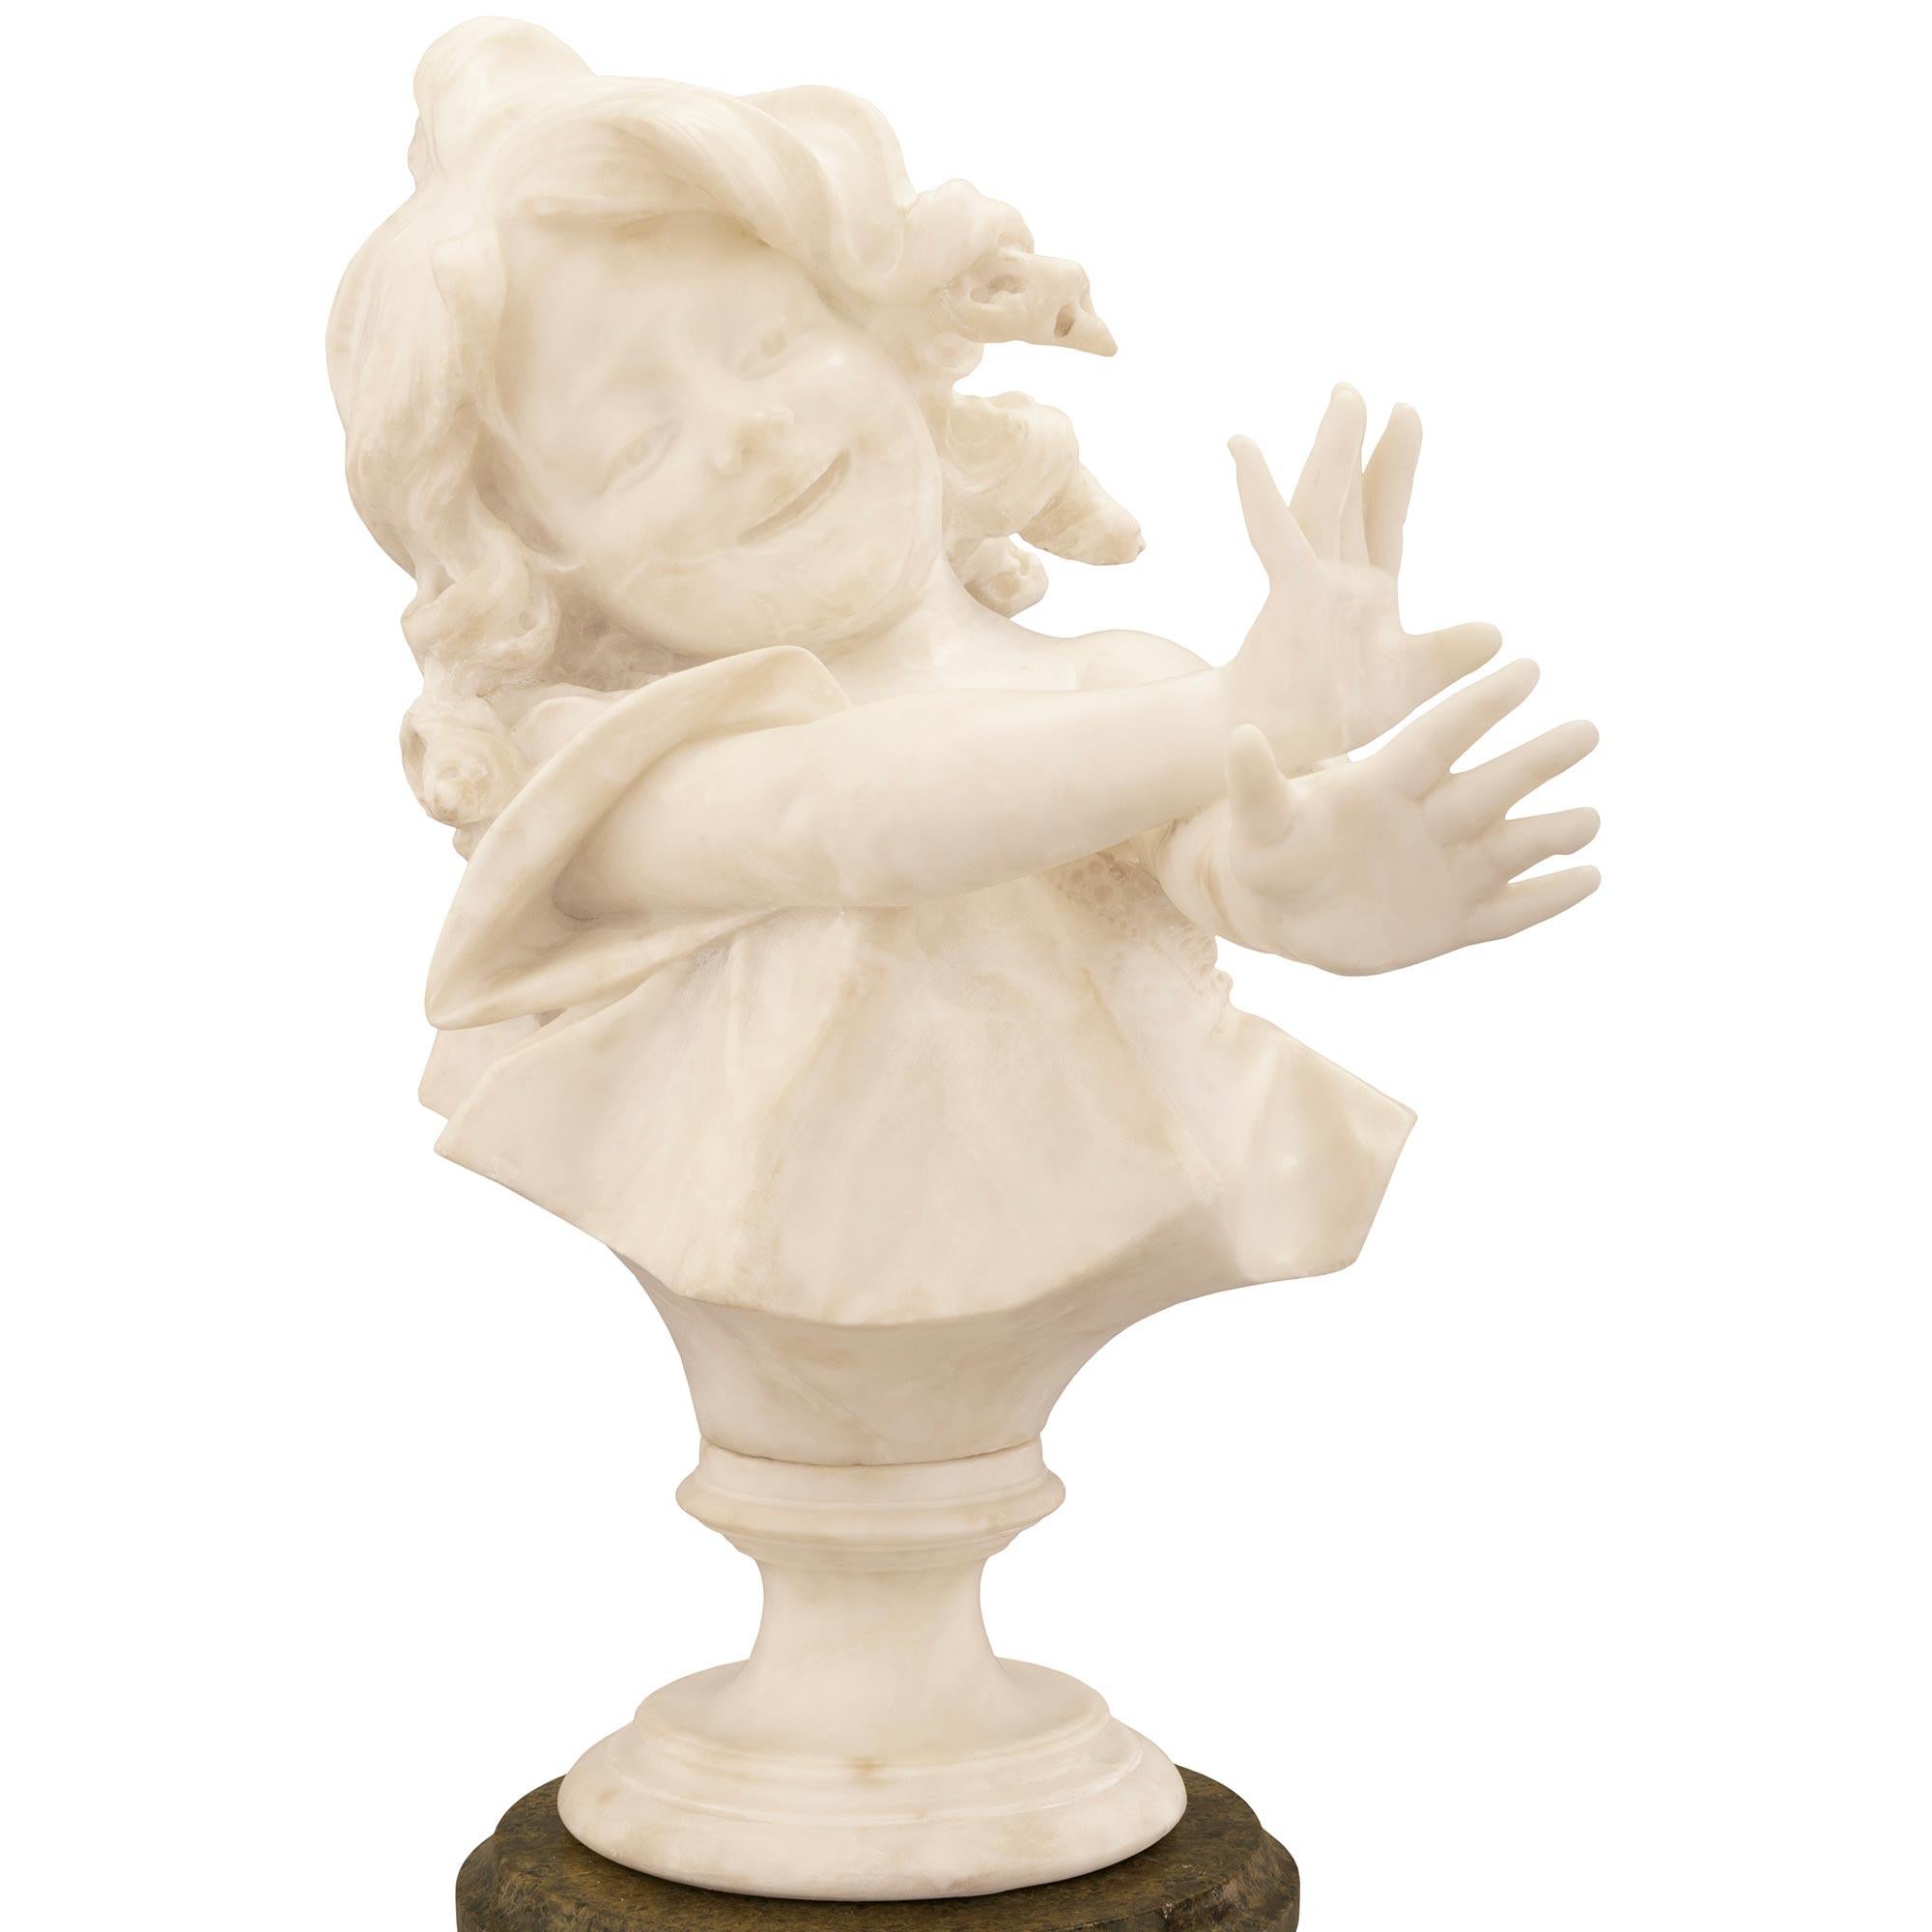 Une étonnante et charmante statue italienne du XIXe siècle en marbre blanc de Carrare représentant une jeune fille sur son piédestal d'origine en marbre Vert de Patricia. La statue délicatement sculptée représente une jeune fille souriante, les